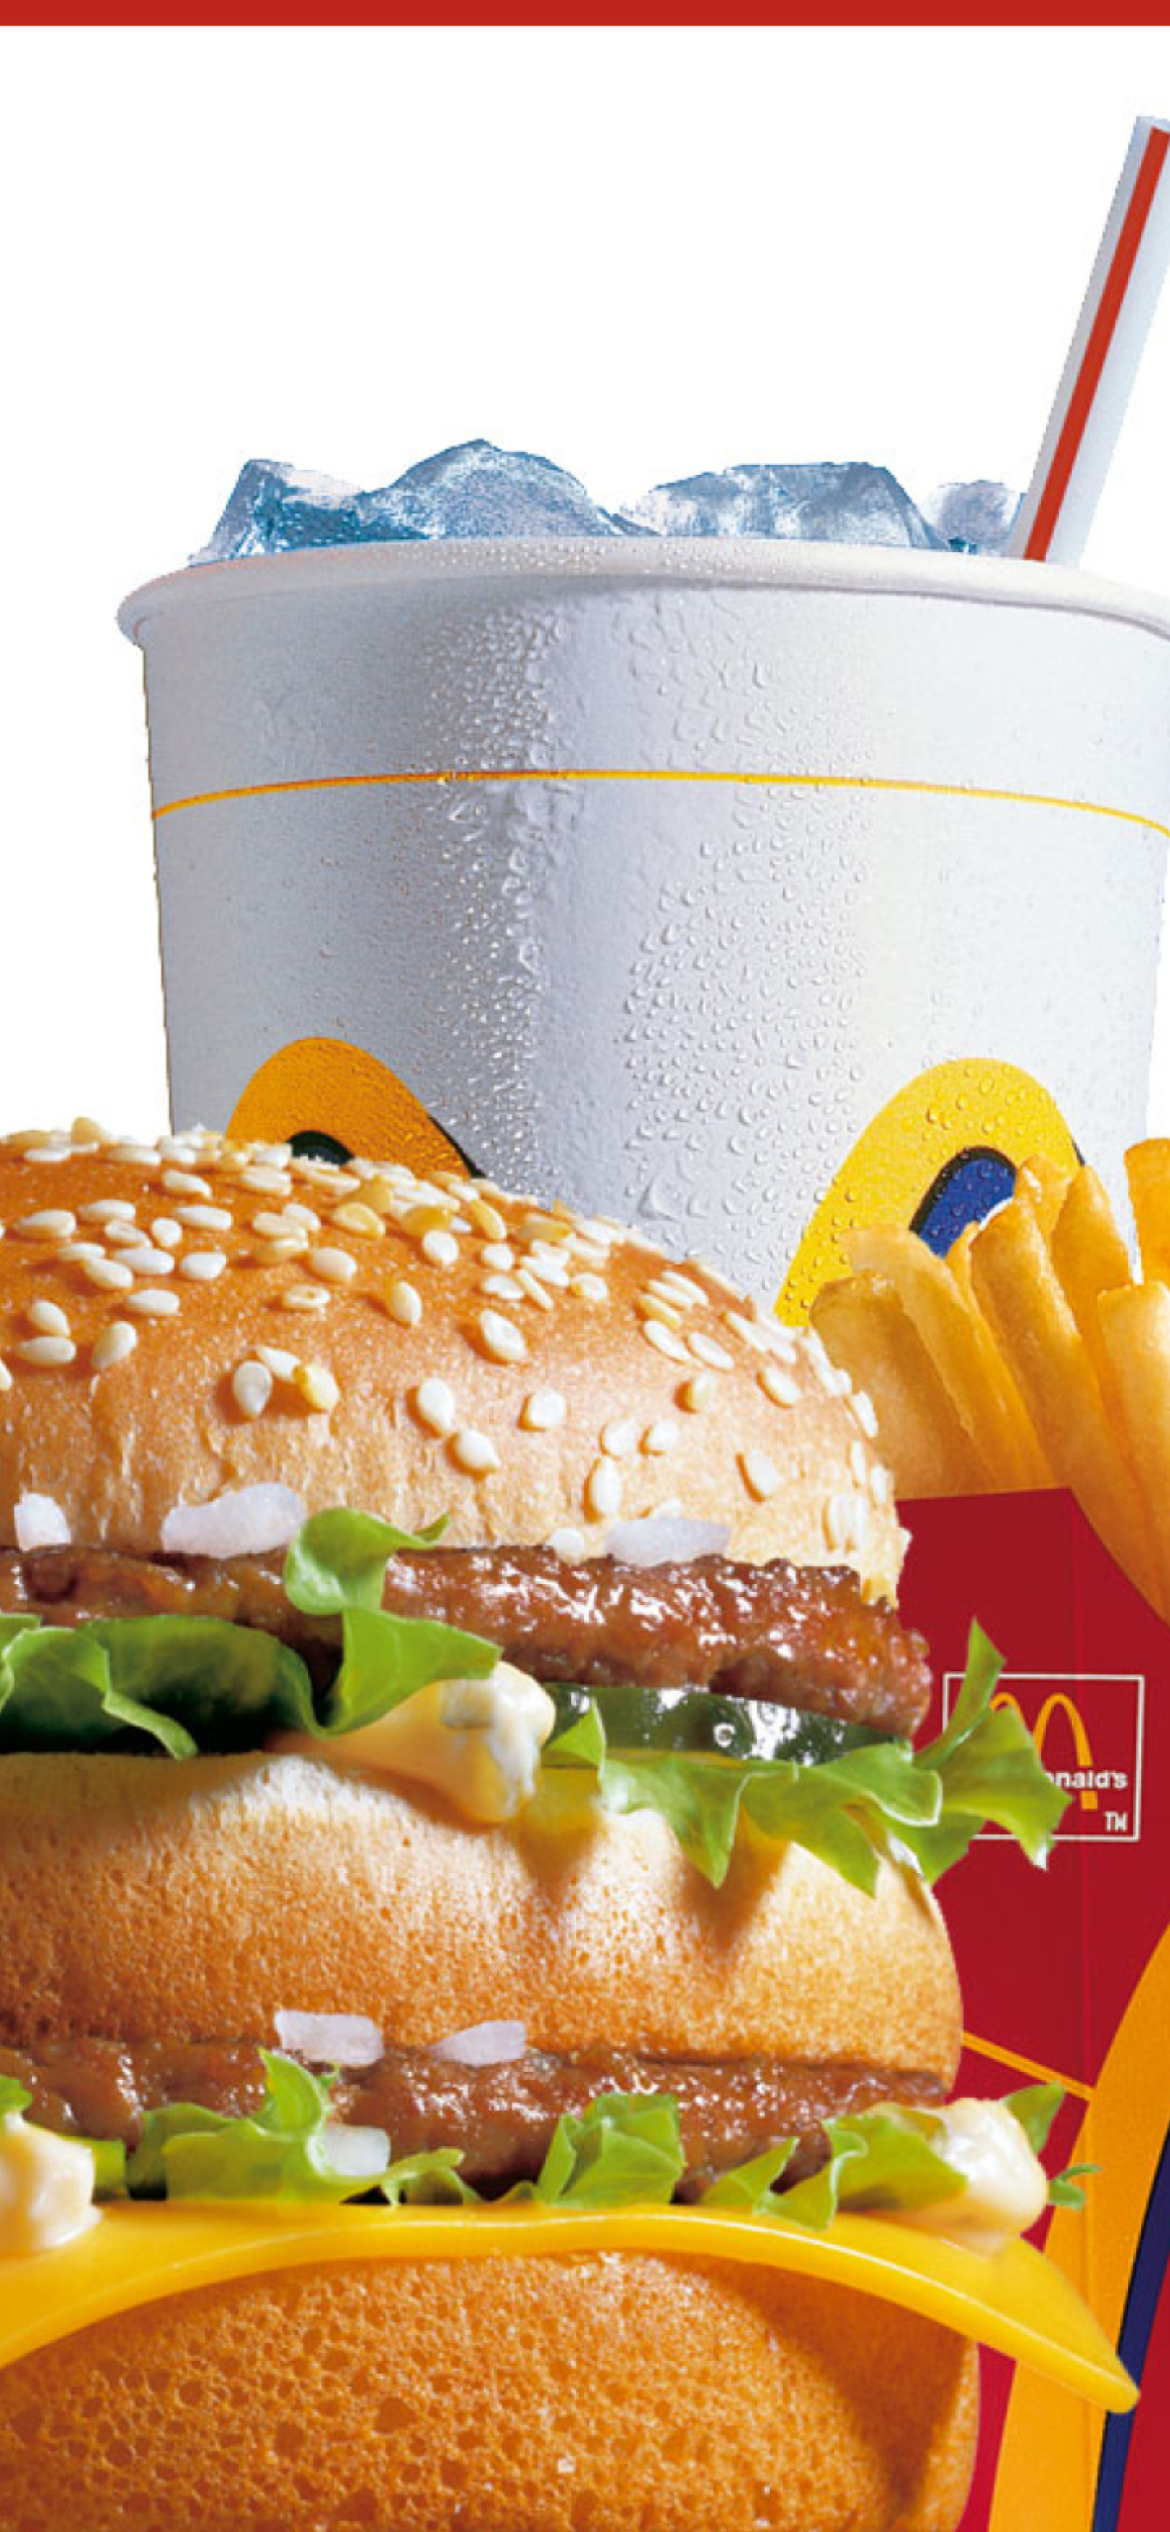 McDonalds: Big Mac screenshot #1 1170x2532